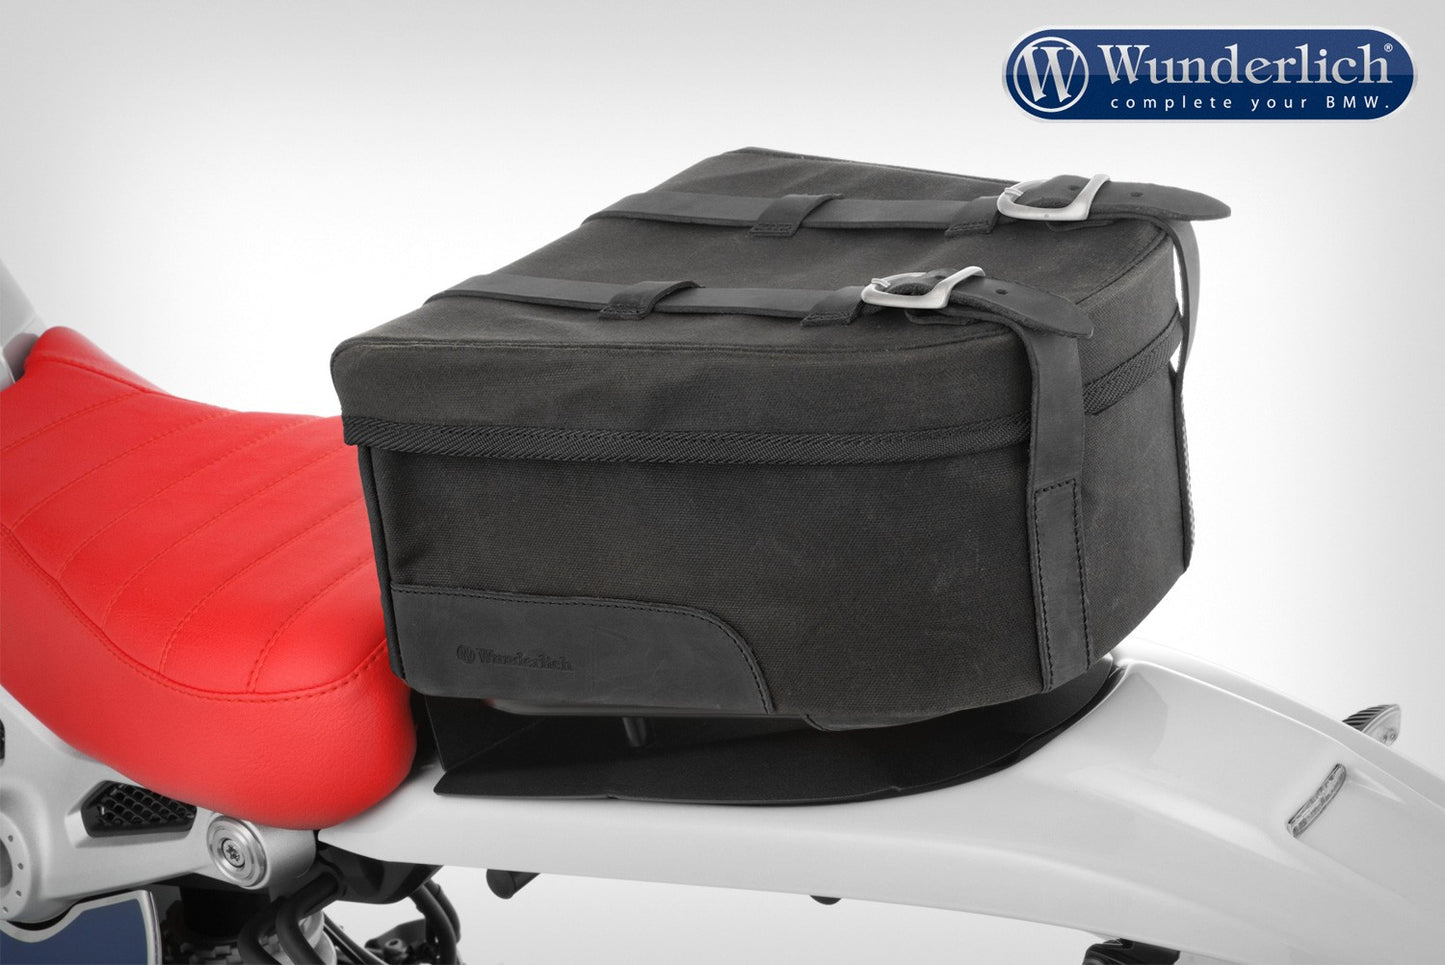 Wunderlich &#8220;Mammut&#8221; saddle bag for passenger luggage carrier - black